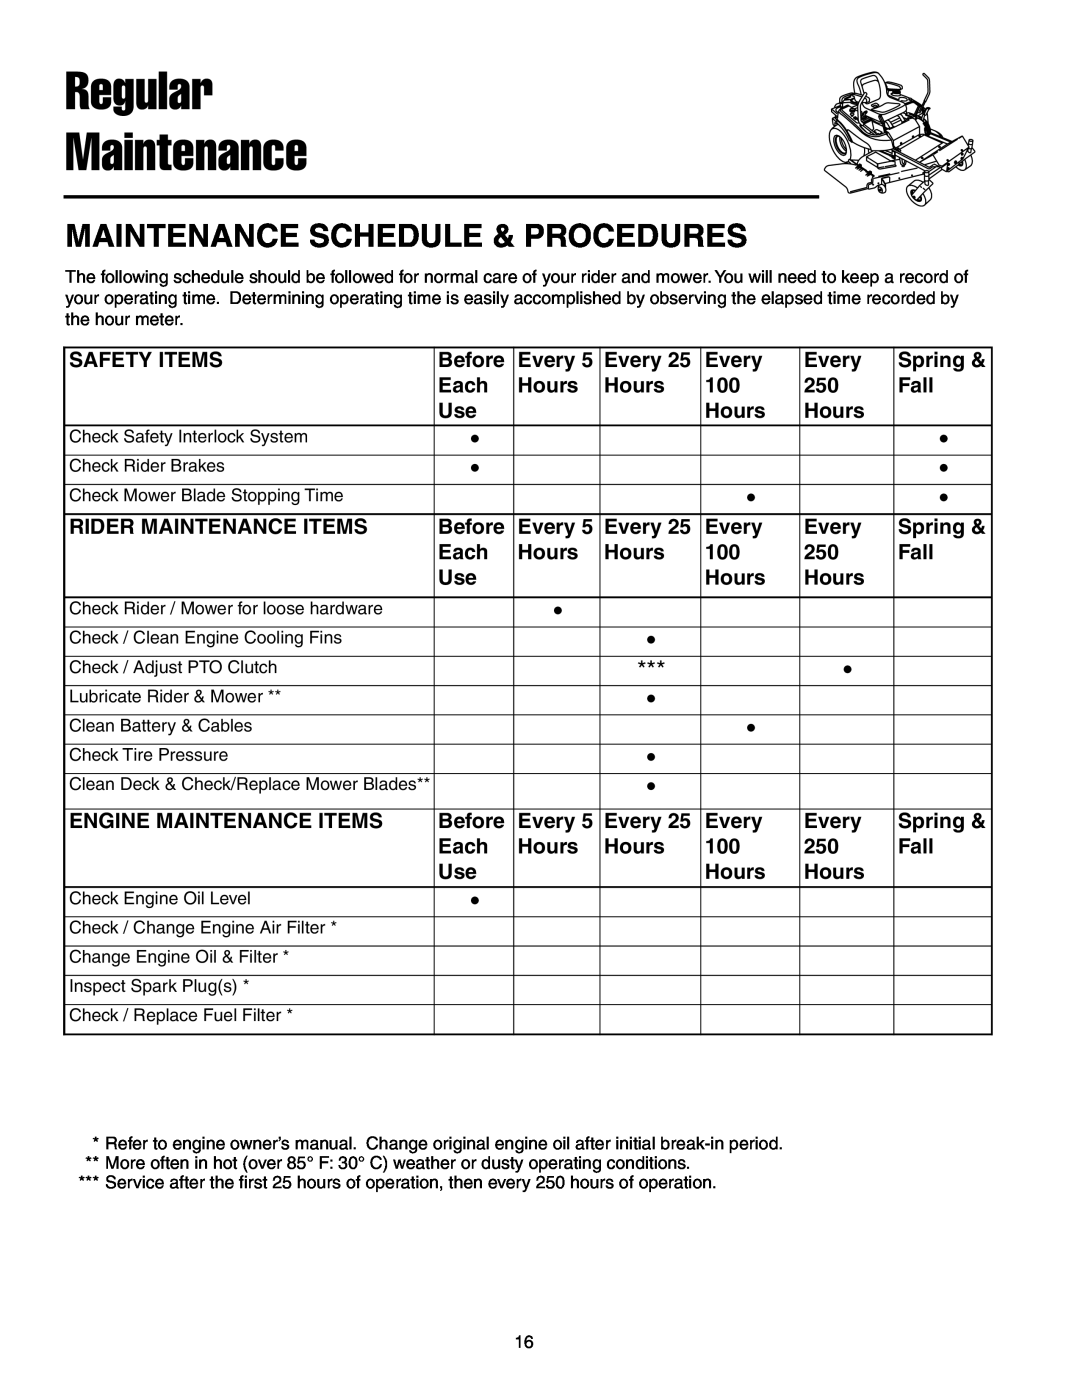 Simplicity 7800071, 7800072 instruction sheet Regular Maintenance, Maintenance Schedule & Procedures 